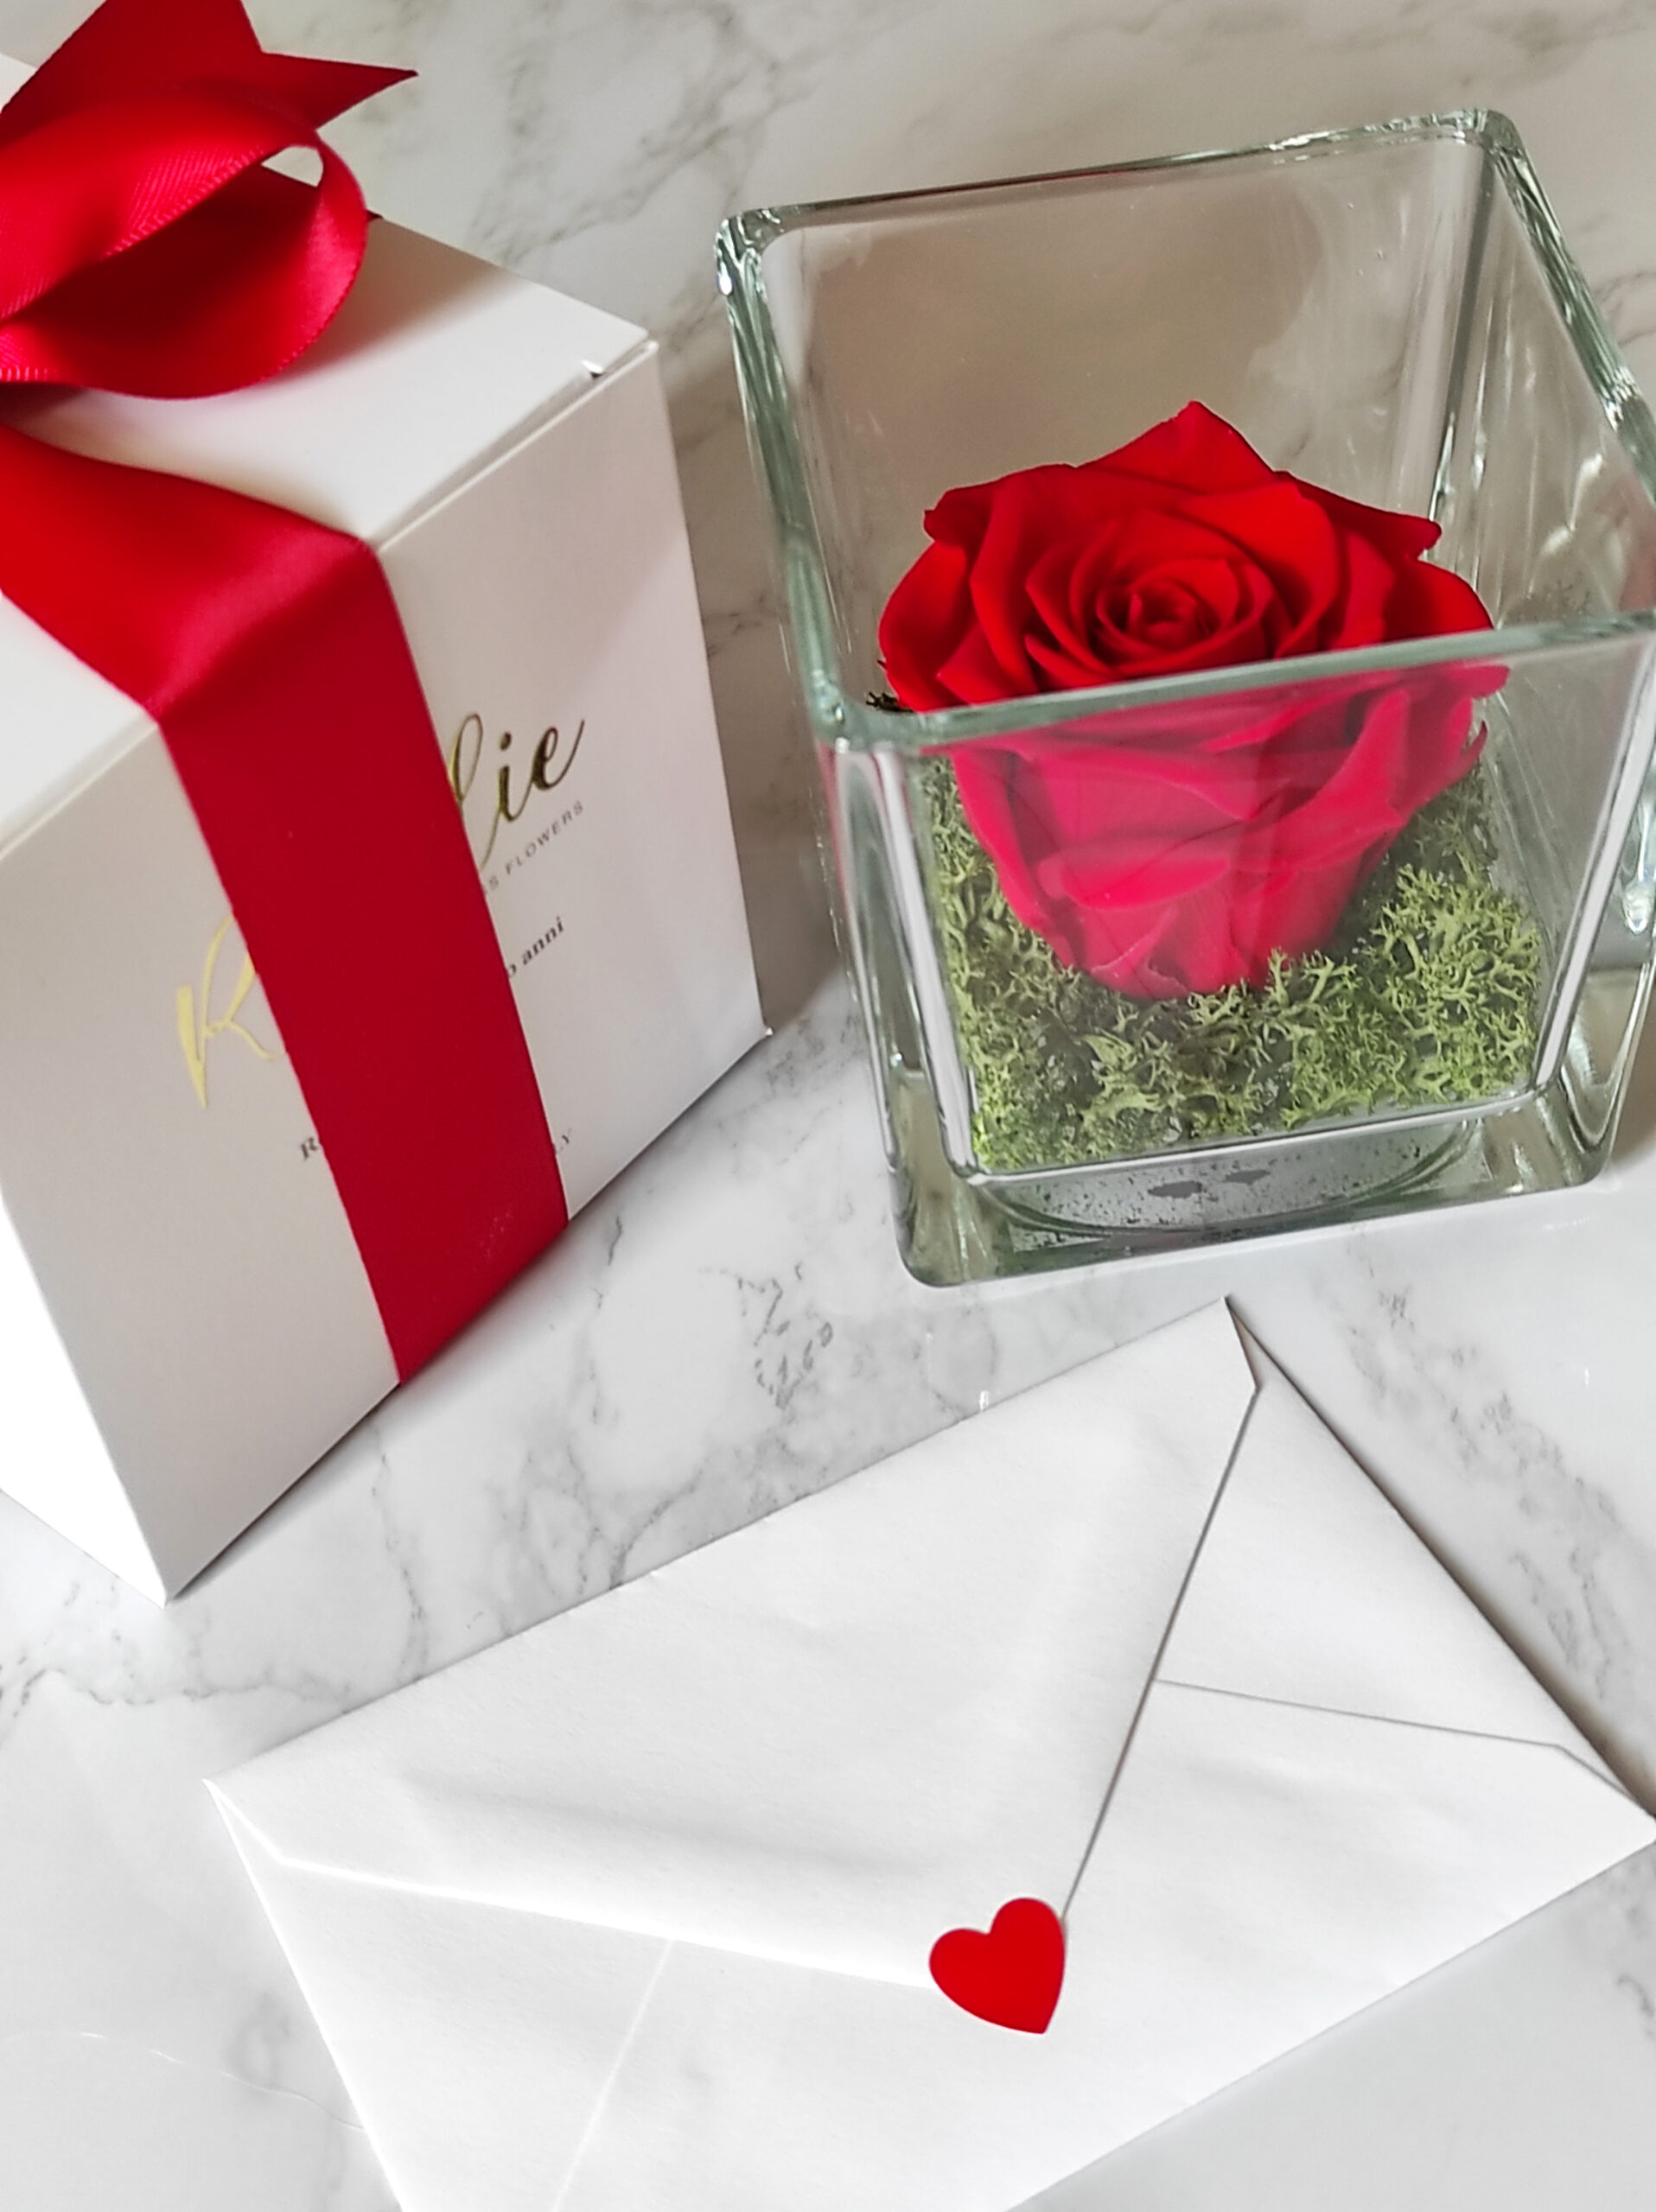 rosa rossa stabilizzata in cubo di vetro accanto a confezione regalo con nastro rosso e biglietto